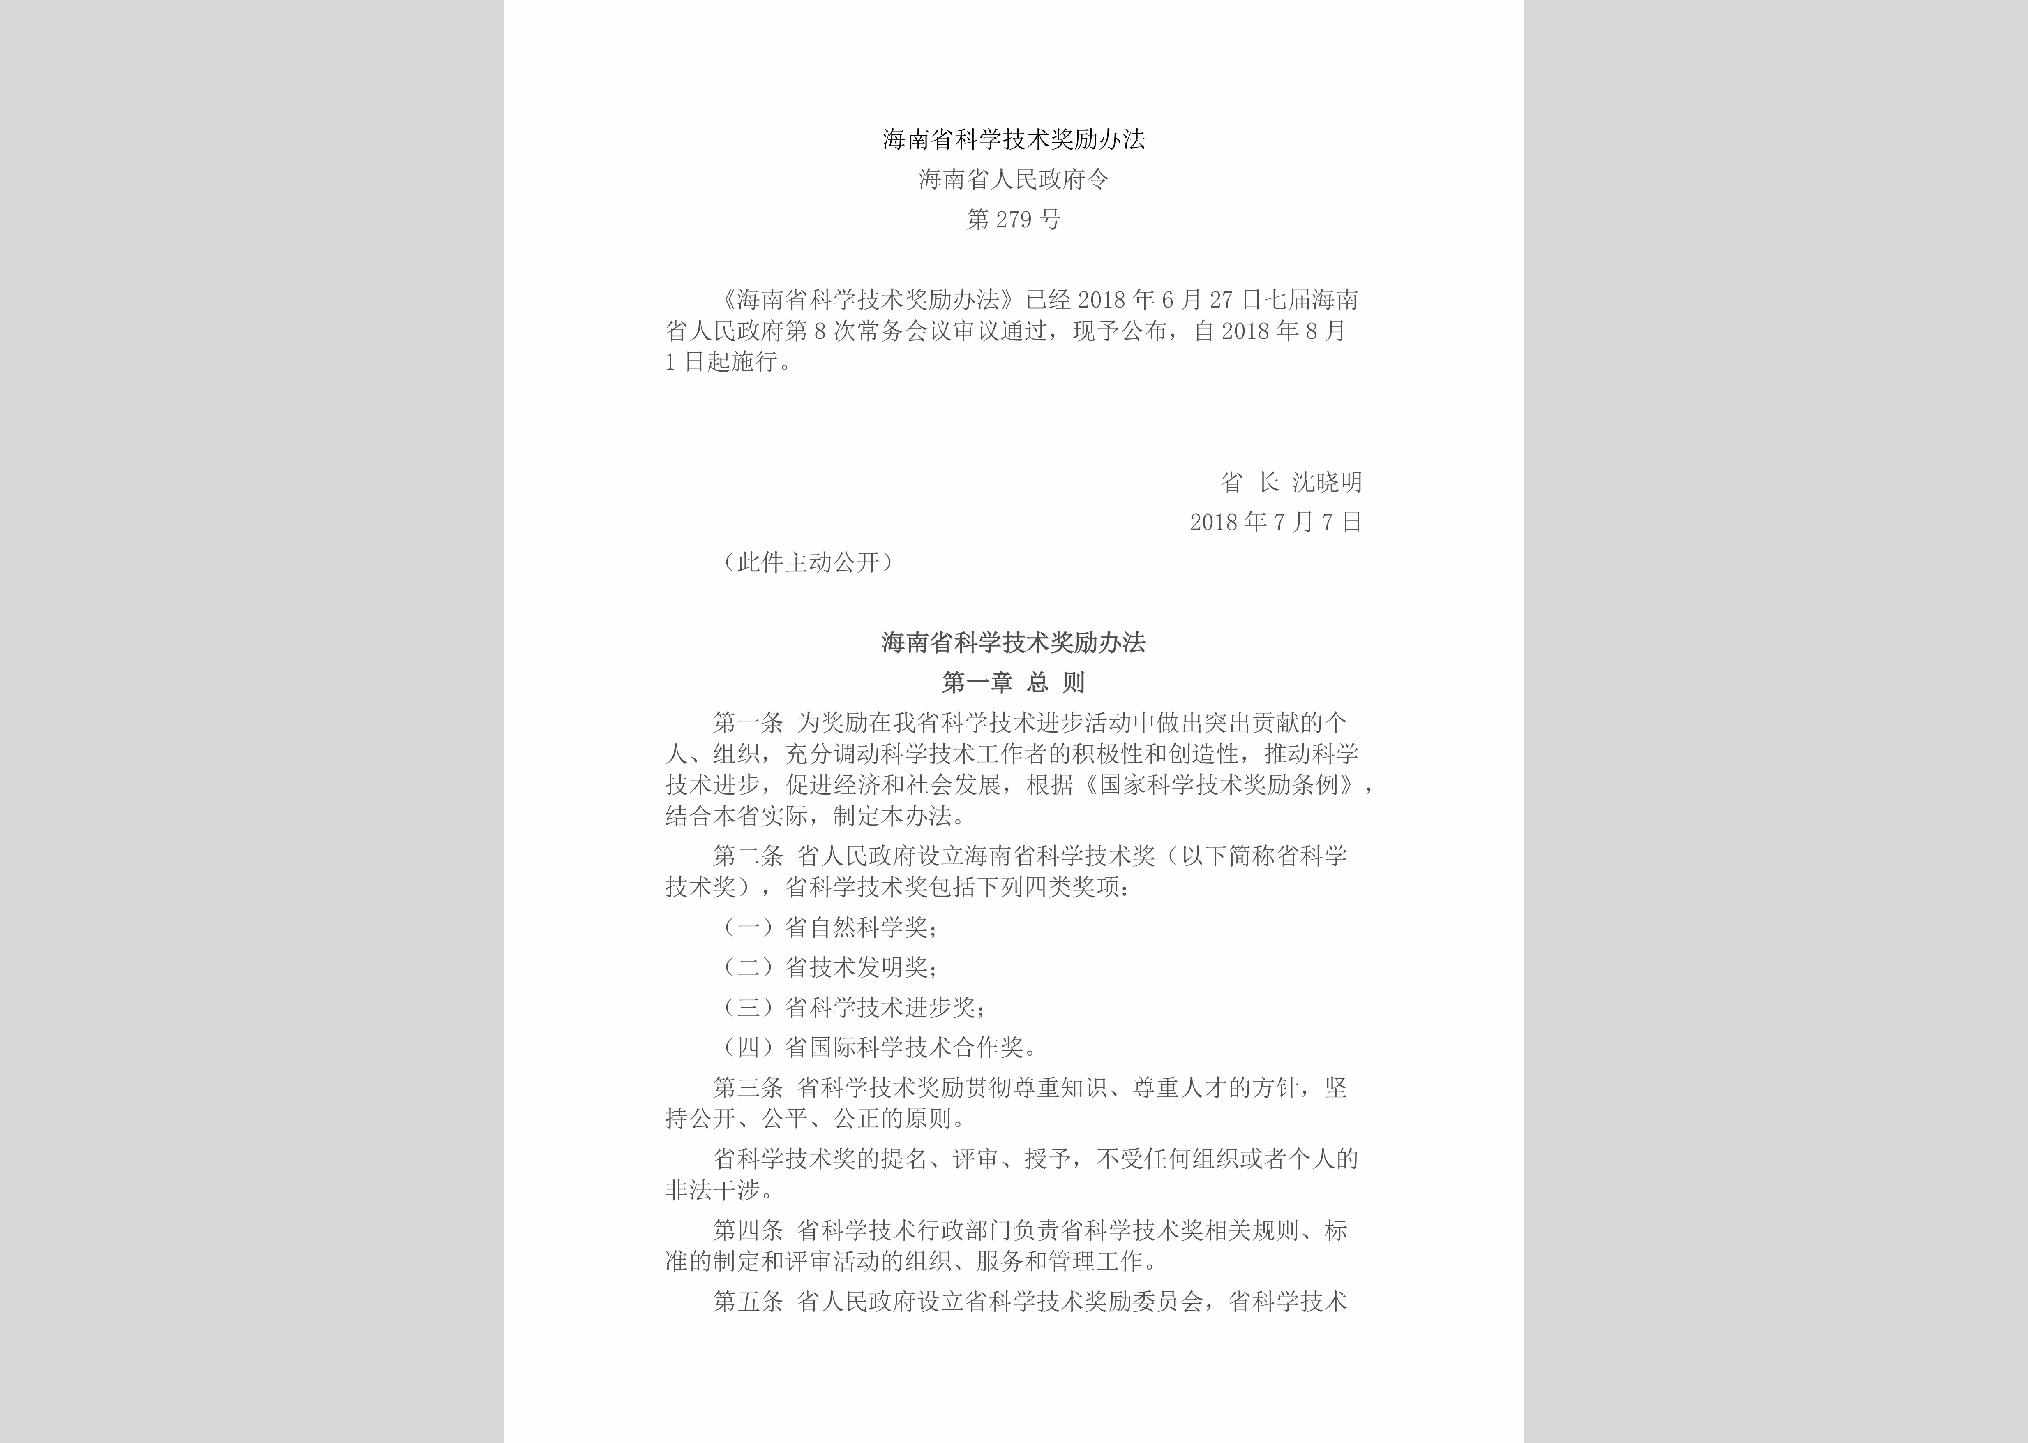 海南省人民政府令第279号：海南省科学技术奖励办法